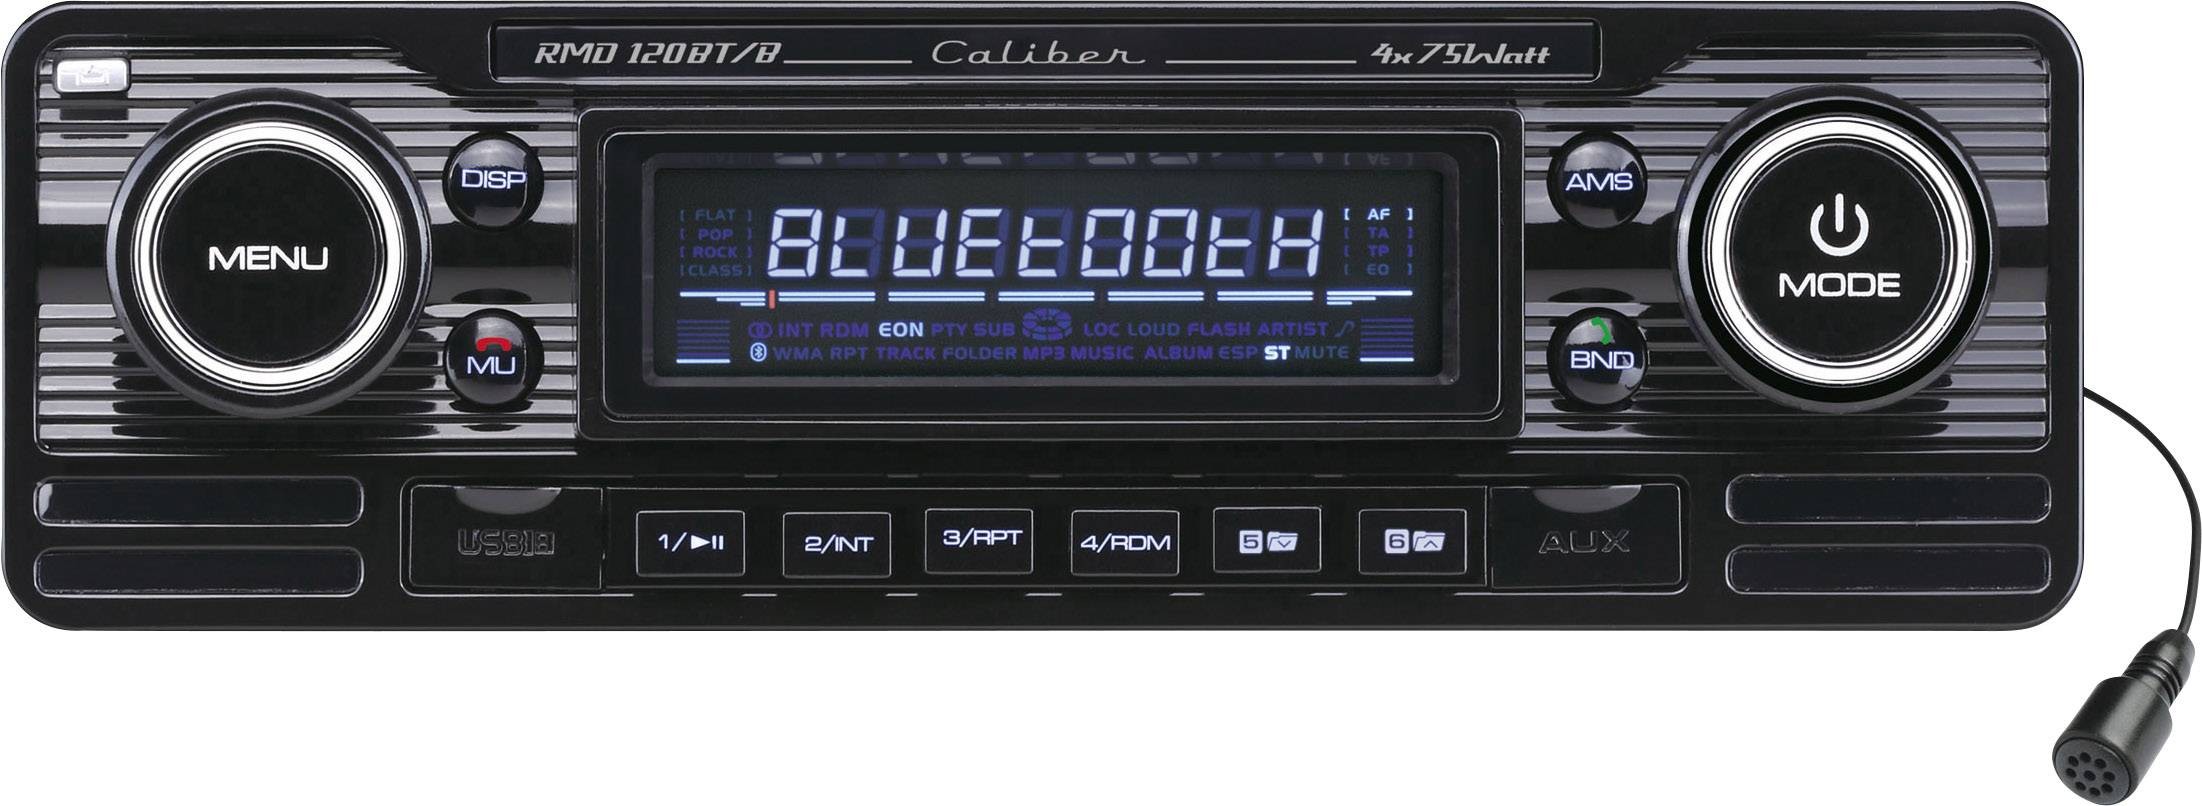 stilte Komkommer Slechte factor CALIBER Autoradio Retro Look Black Met Bluetooth - Usb - Aux kopen?